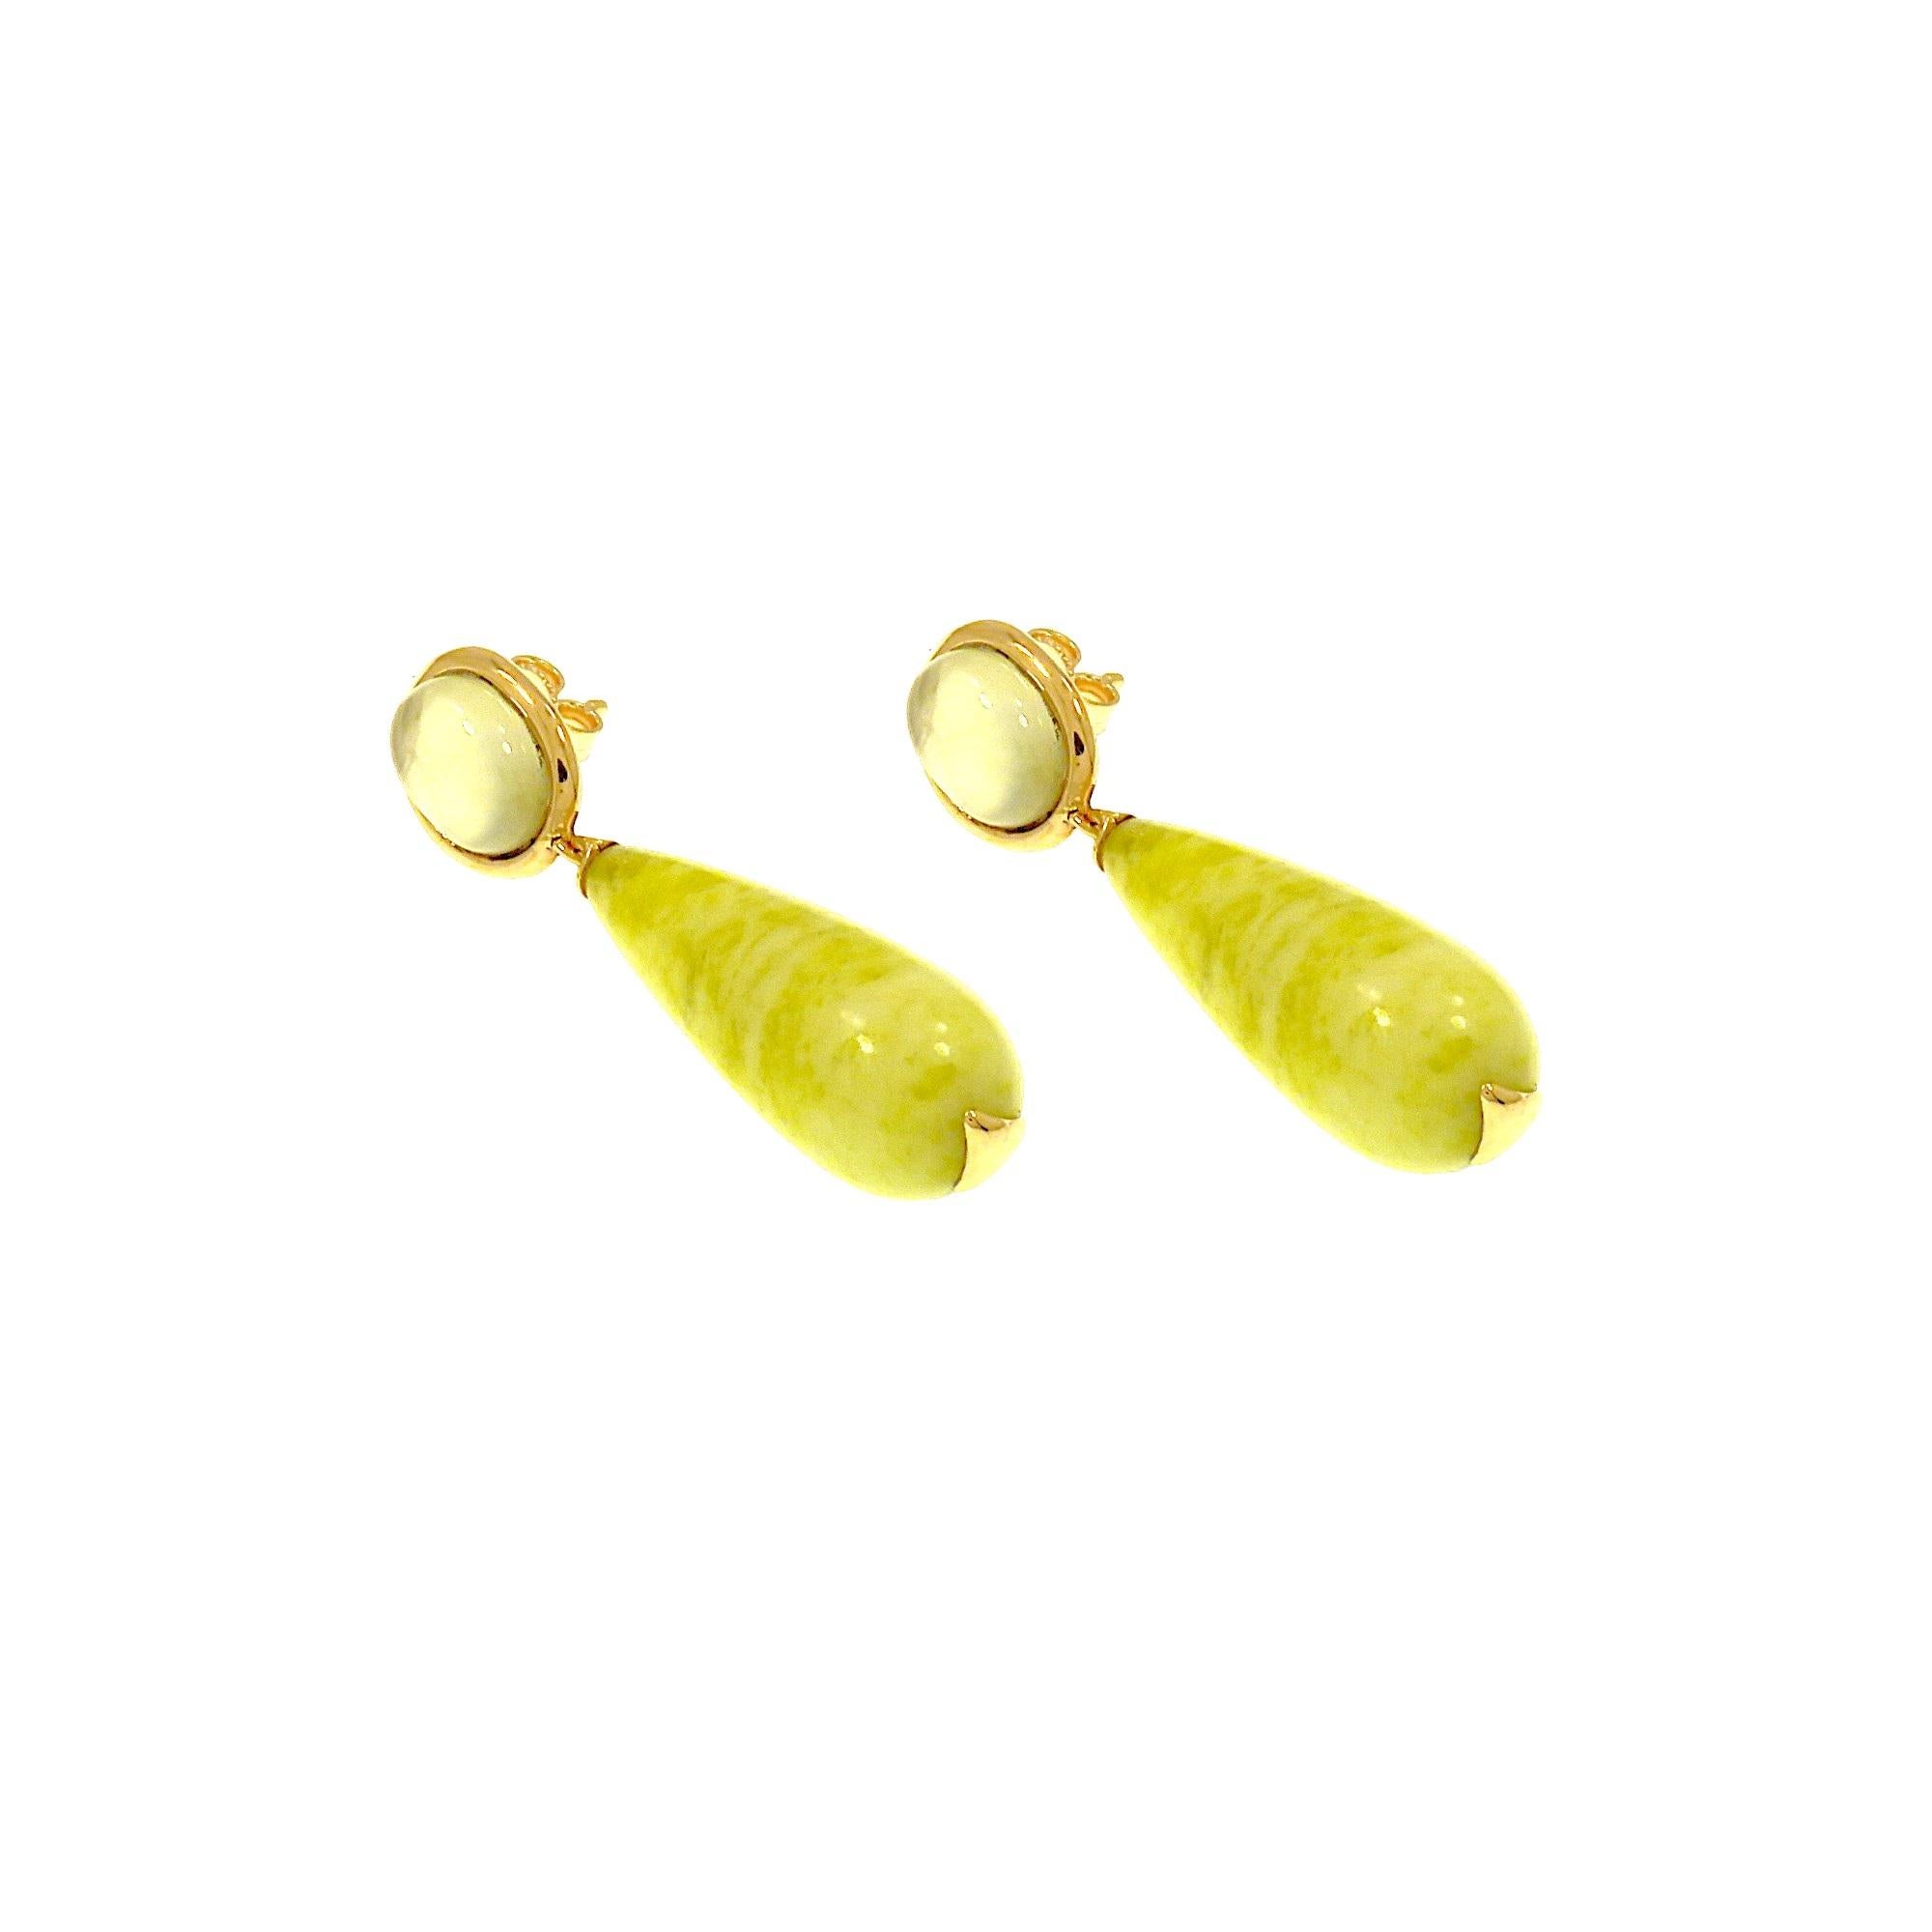 Ein eleganter und klassischer Ohrhänger mit einem ovalen Prehnit-Cabochon im Cabochon-Schliff, gefasst in 9 Karat Roségold mit einer Nadel und einem Schmetterling, an dem ein Tropfen aus gelbem Achat baumelt. Die Abmessungen des Prehnit sind 10x8 mm